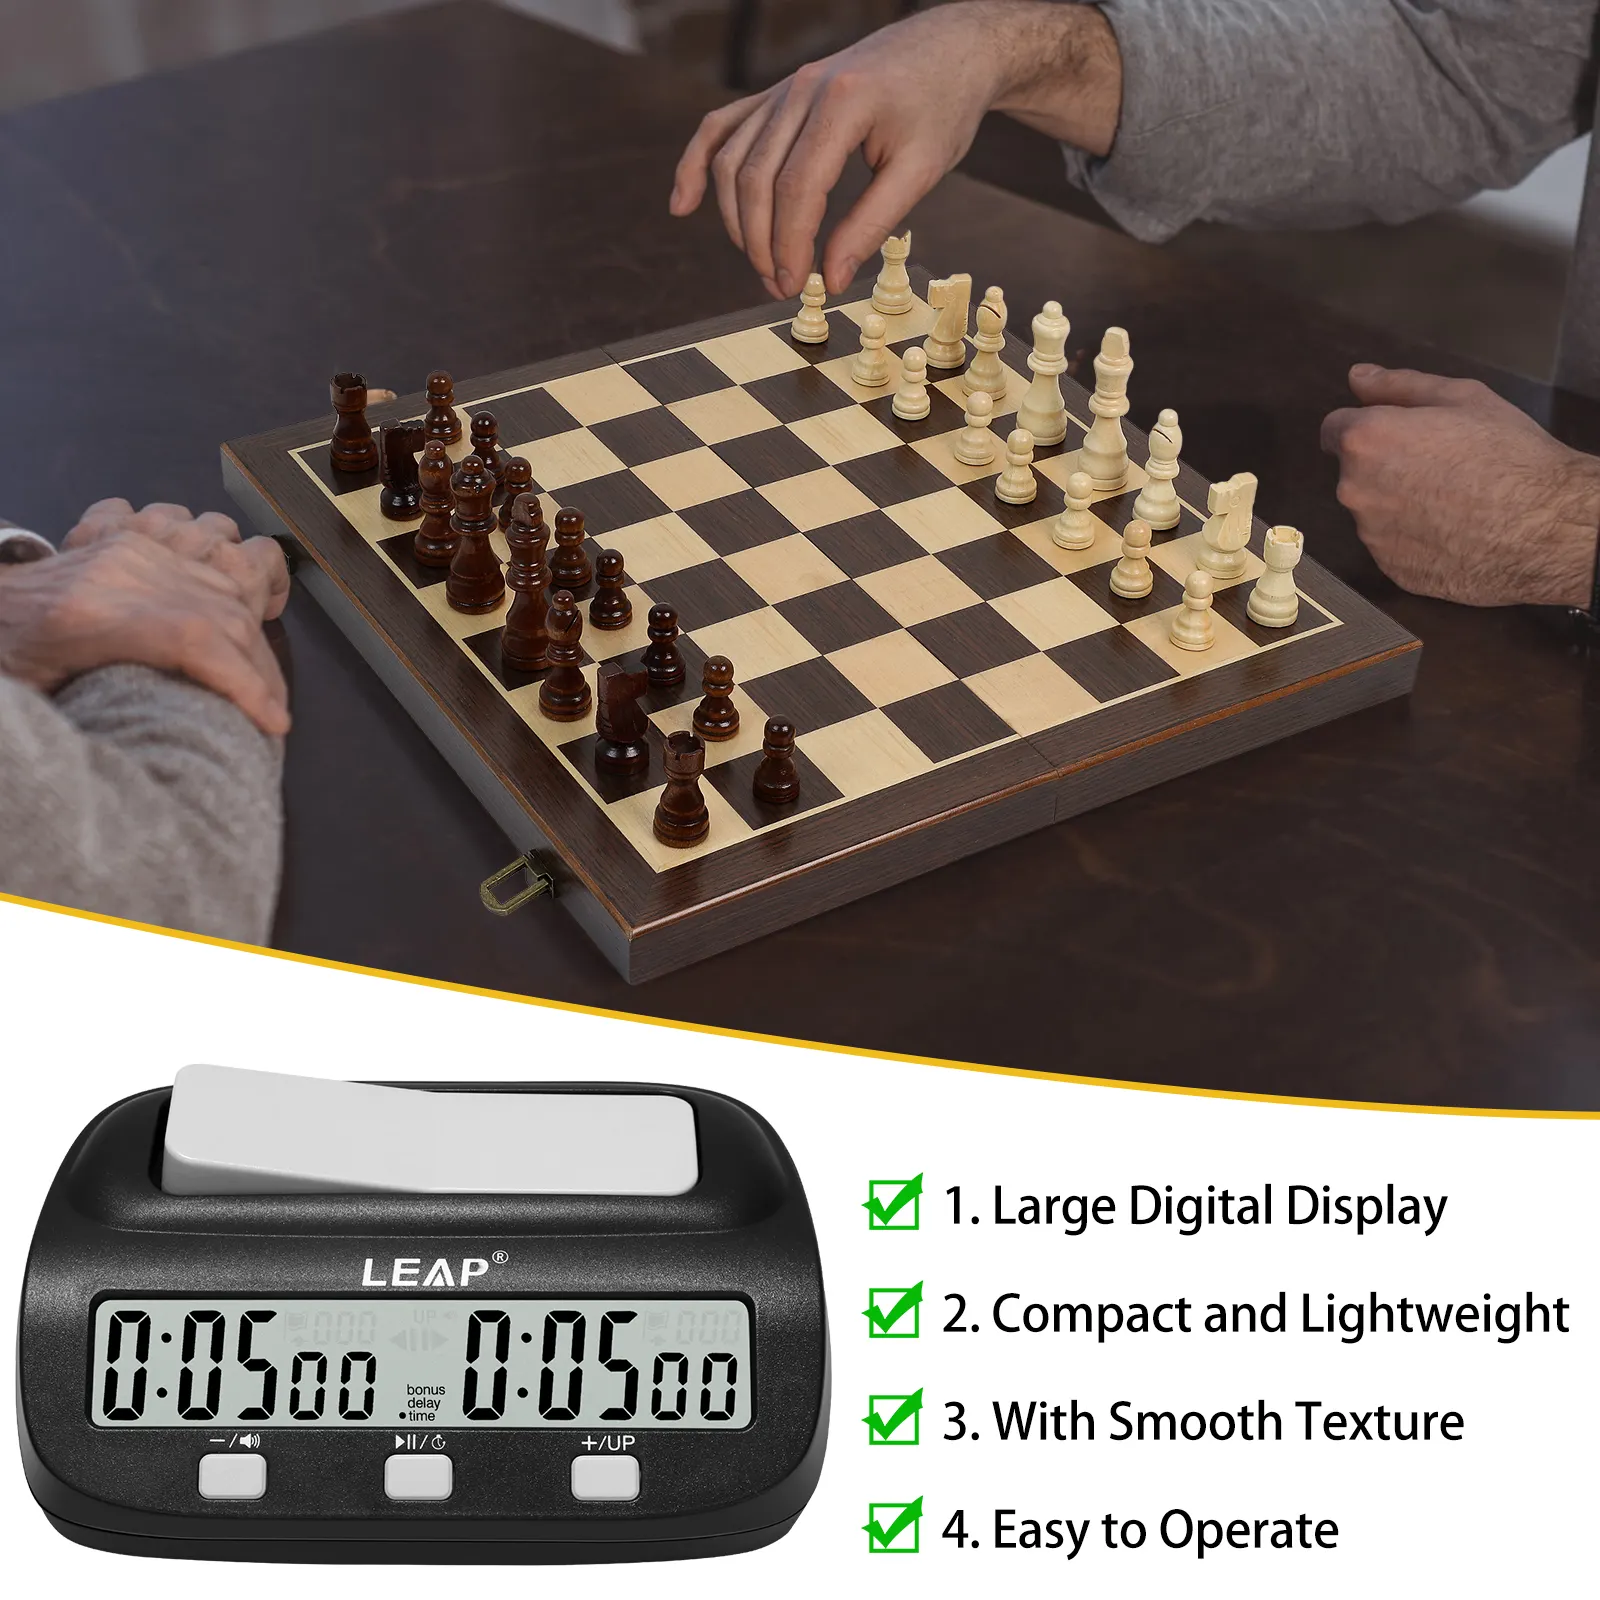 Leap màn hình lớn kỹ thuật số giá rẻ cờ vua đồng hồ hẹn giờ cờ vua trò chơi đồng hồ với tiền thưởng và sự chậm trễ với increment cho giải đấu